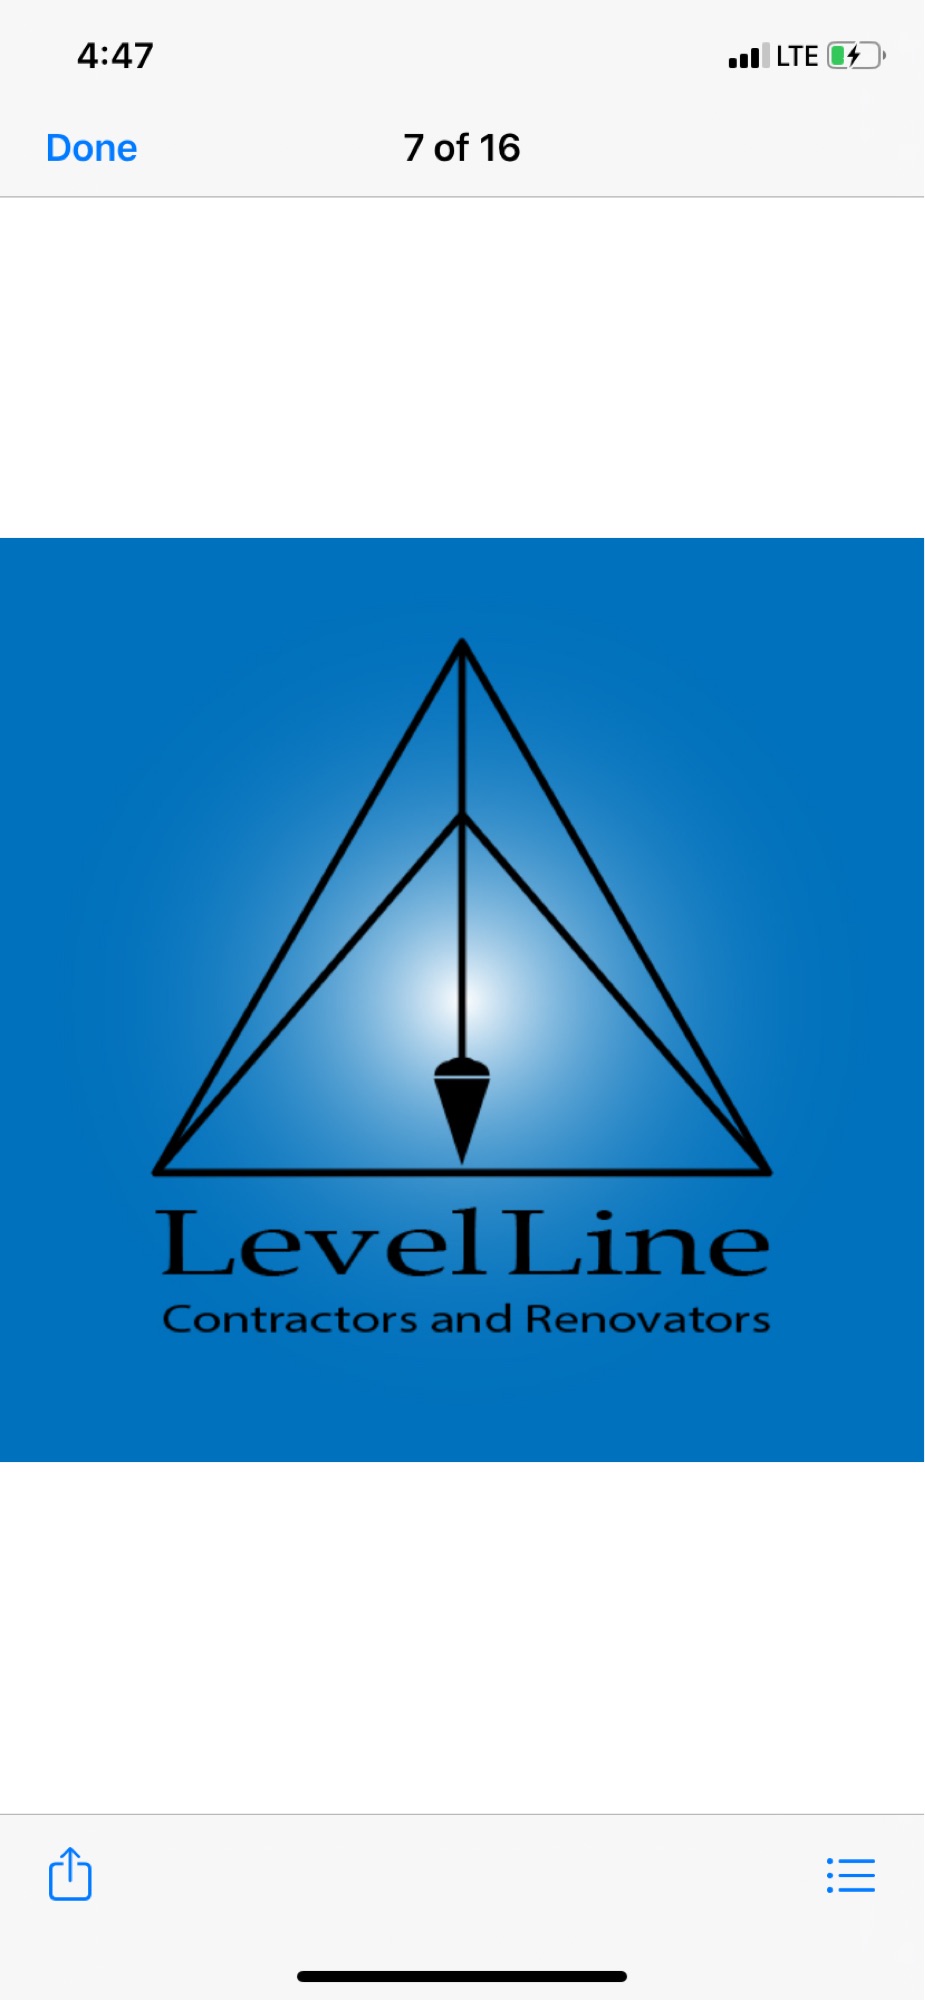 Level Line Contractors and Renovators Logo